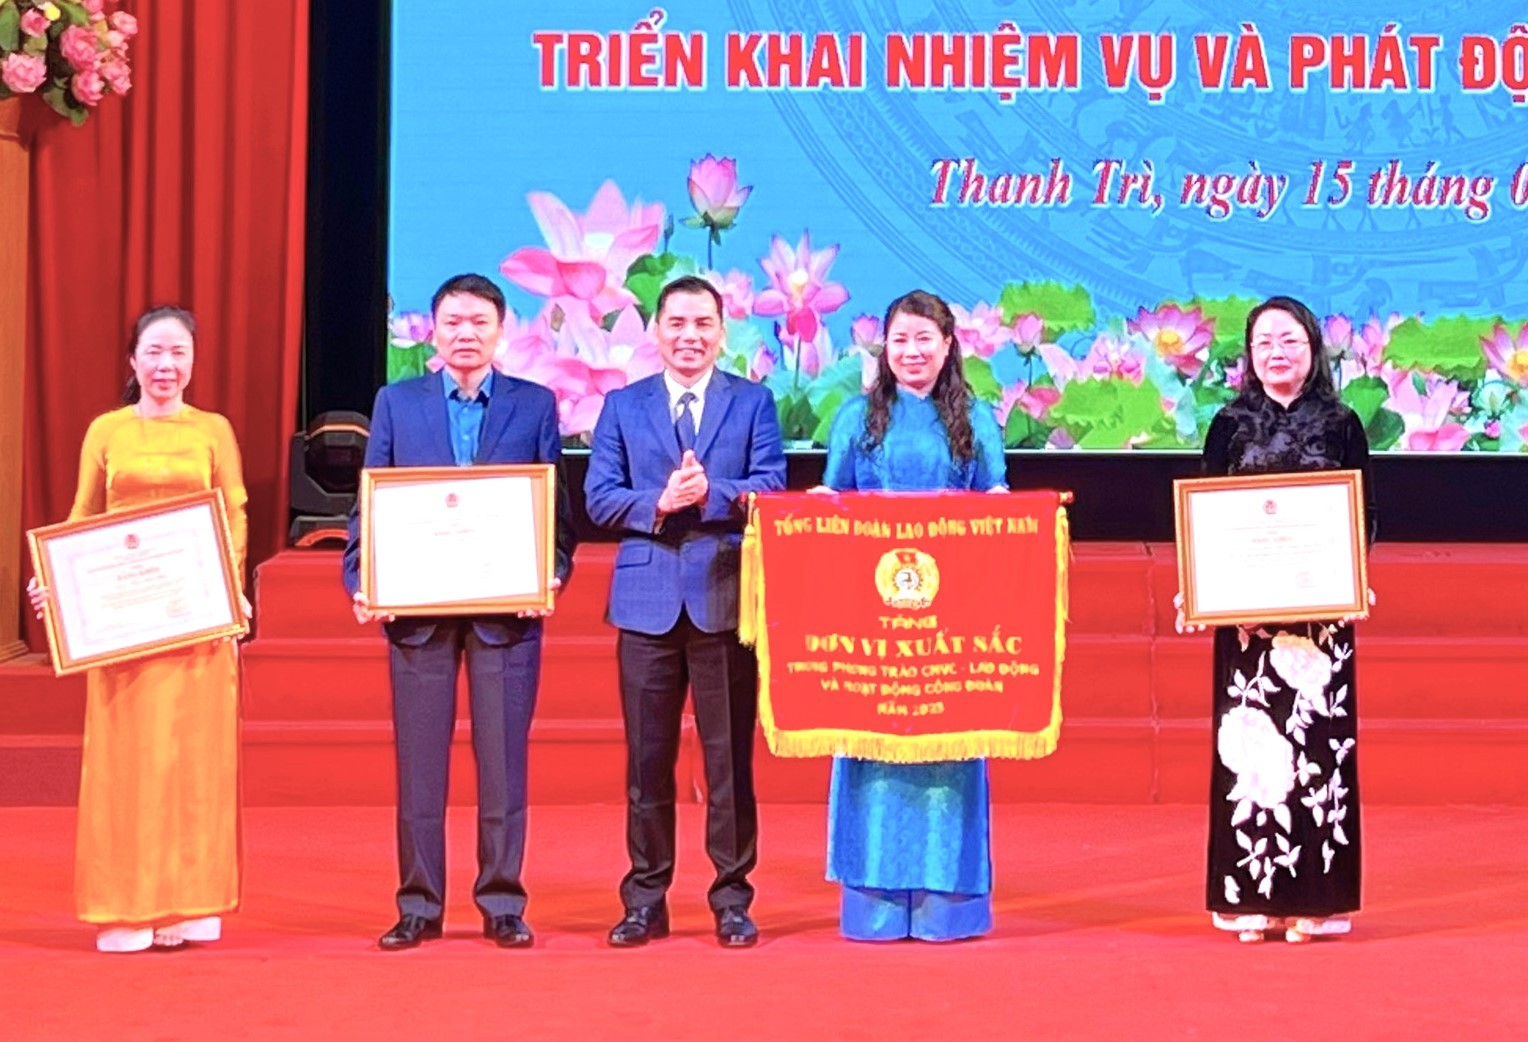 LĐLĐ huyện Thanh Trì: Quyết tâm thực hiện thắng lợi nhiệm vụ năm 2024